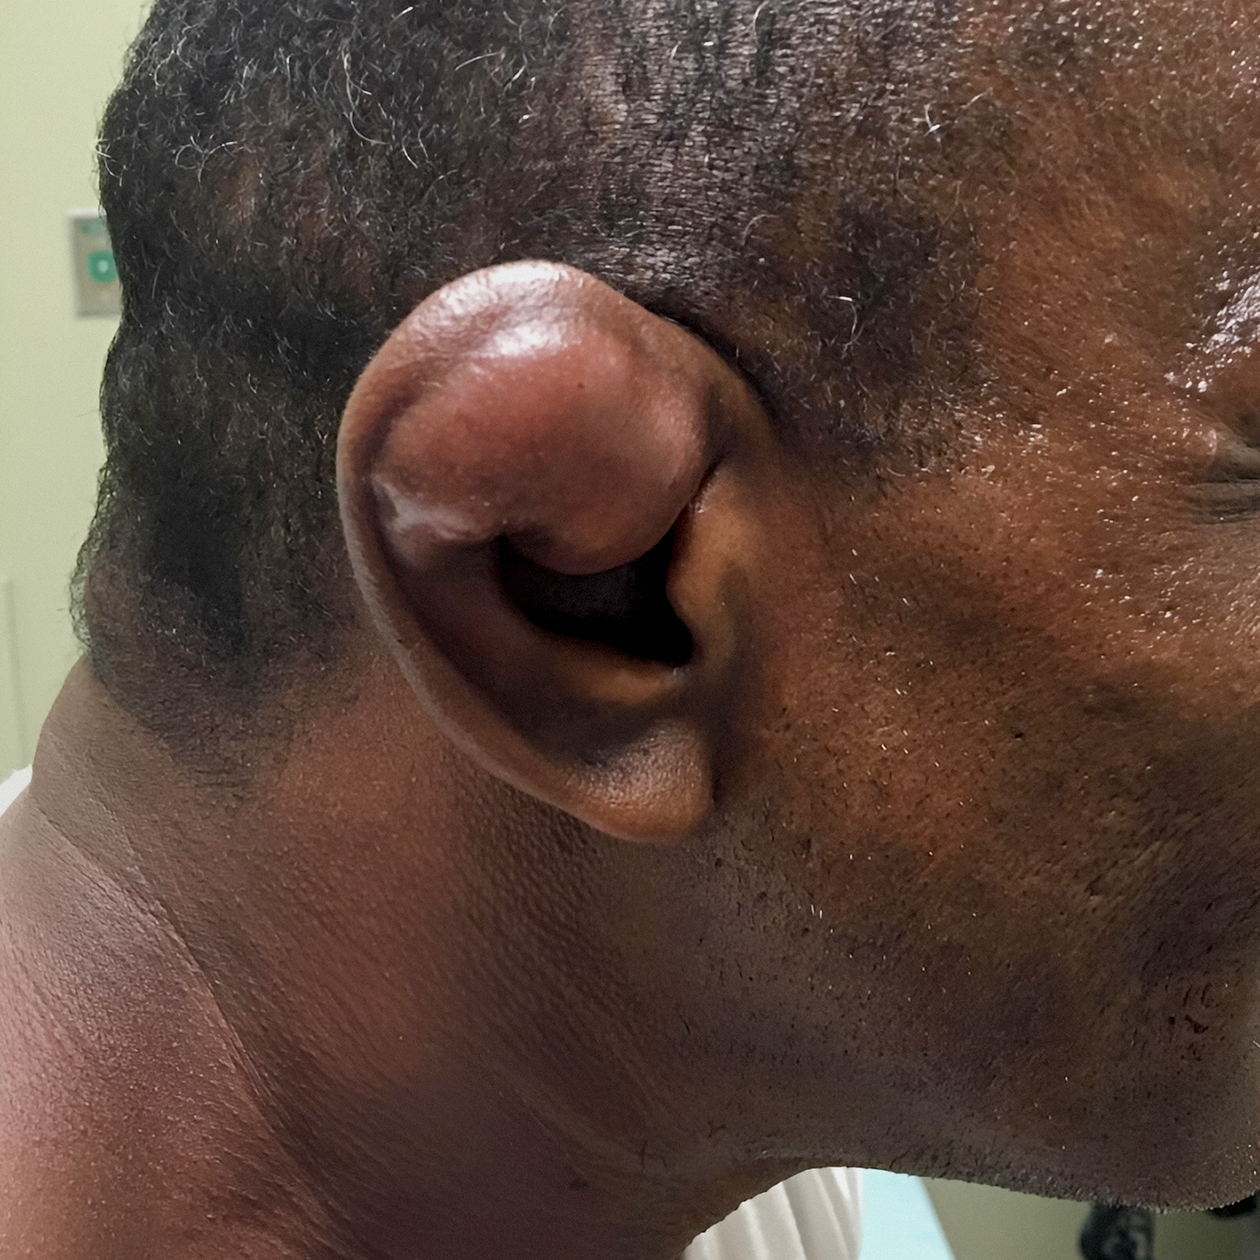 Борцовское ухо с тяжелой степенью деформации. Источник: Национальная библиотека медицины США